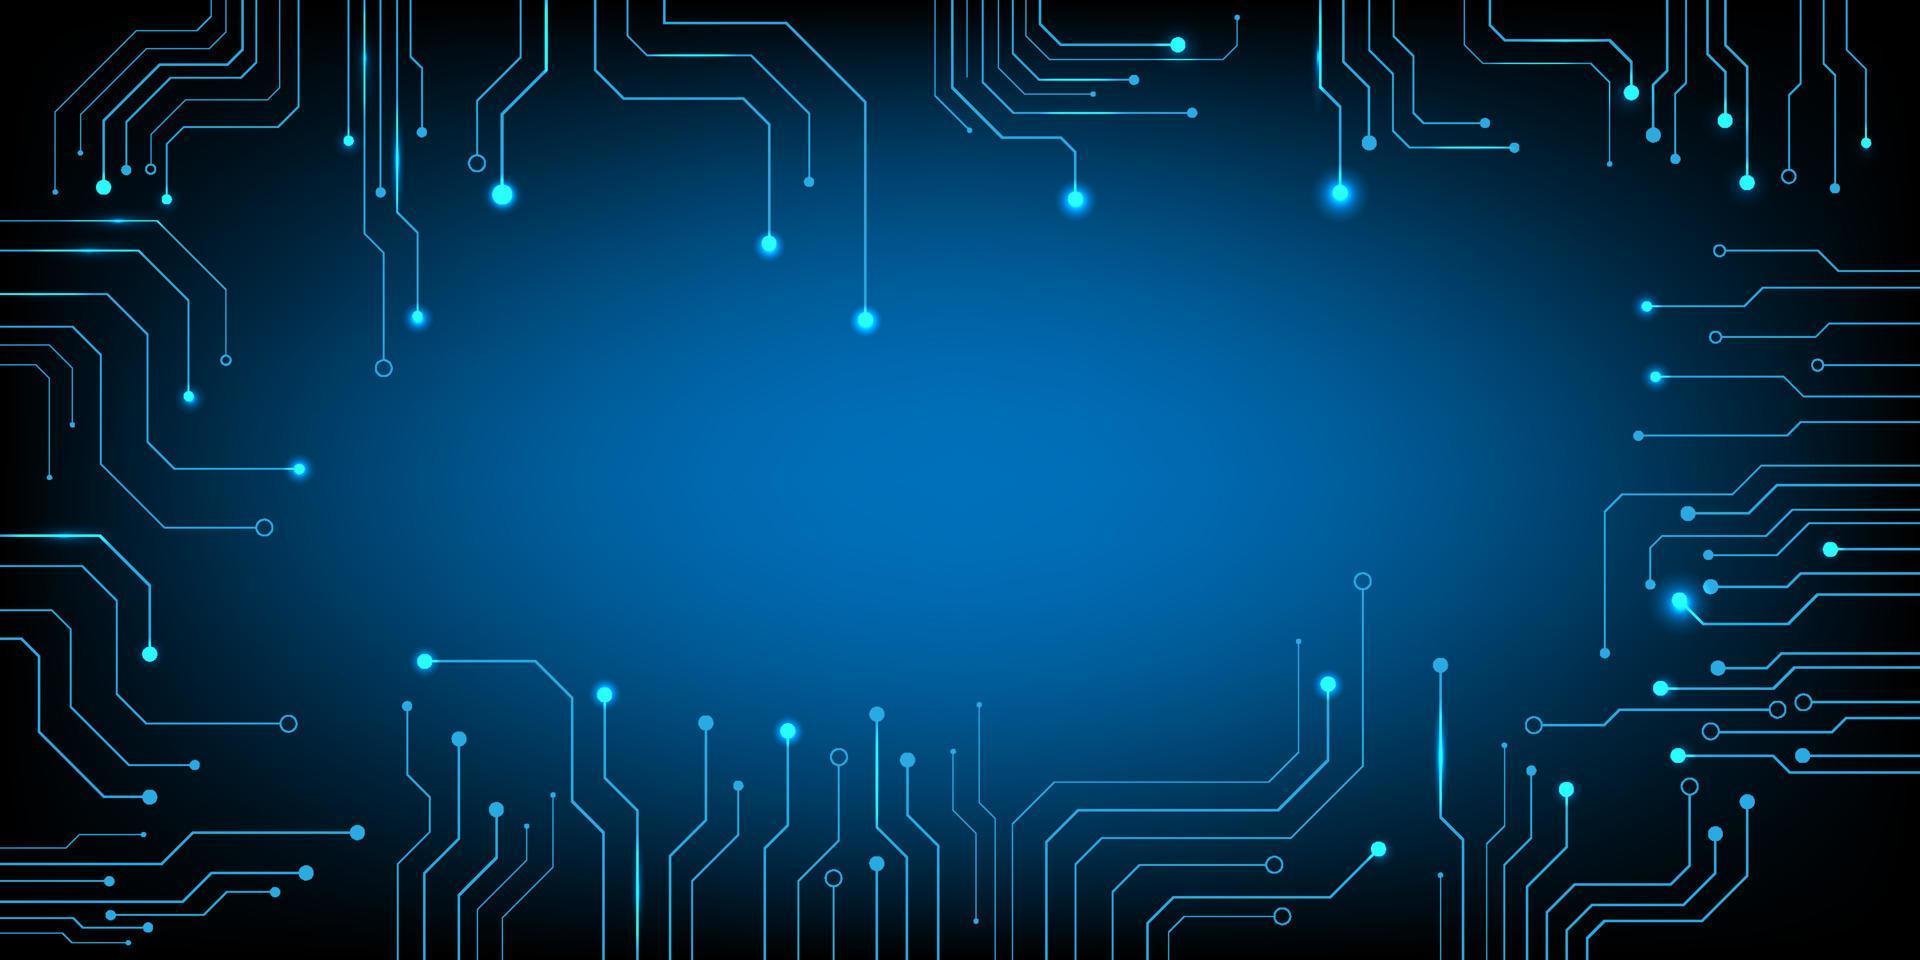 vetor de placa de circuito eletrônico de chip de computador para conceito de tecnologia e finanças e educação para o futuro